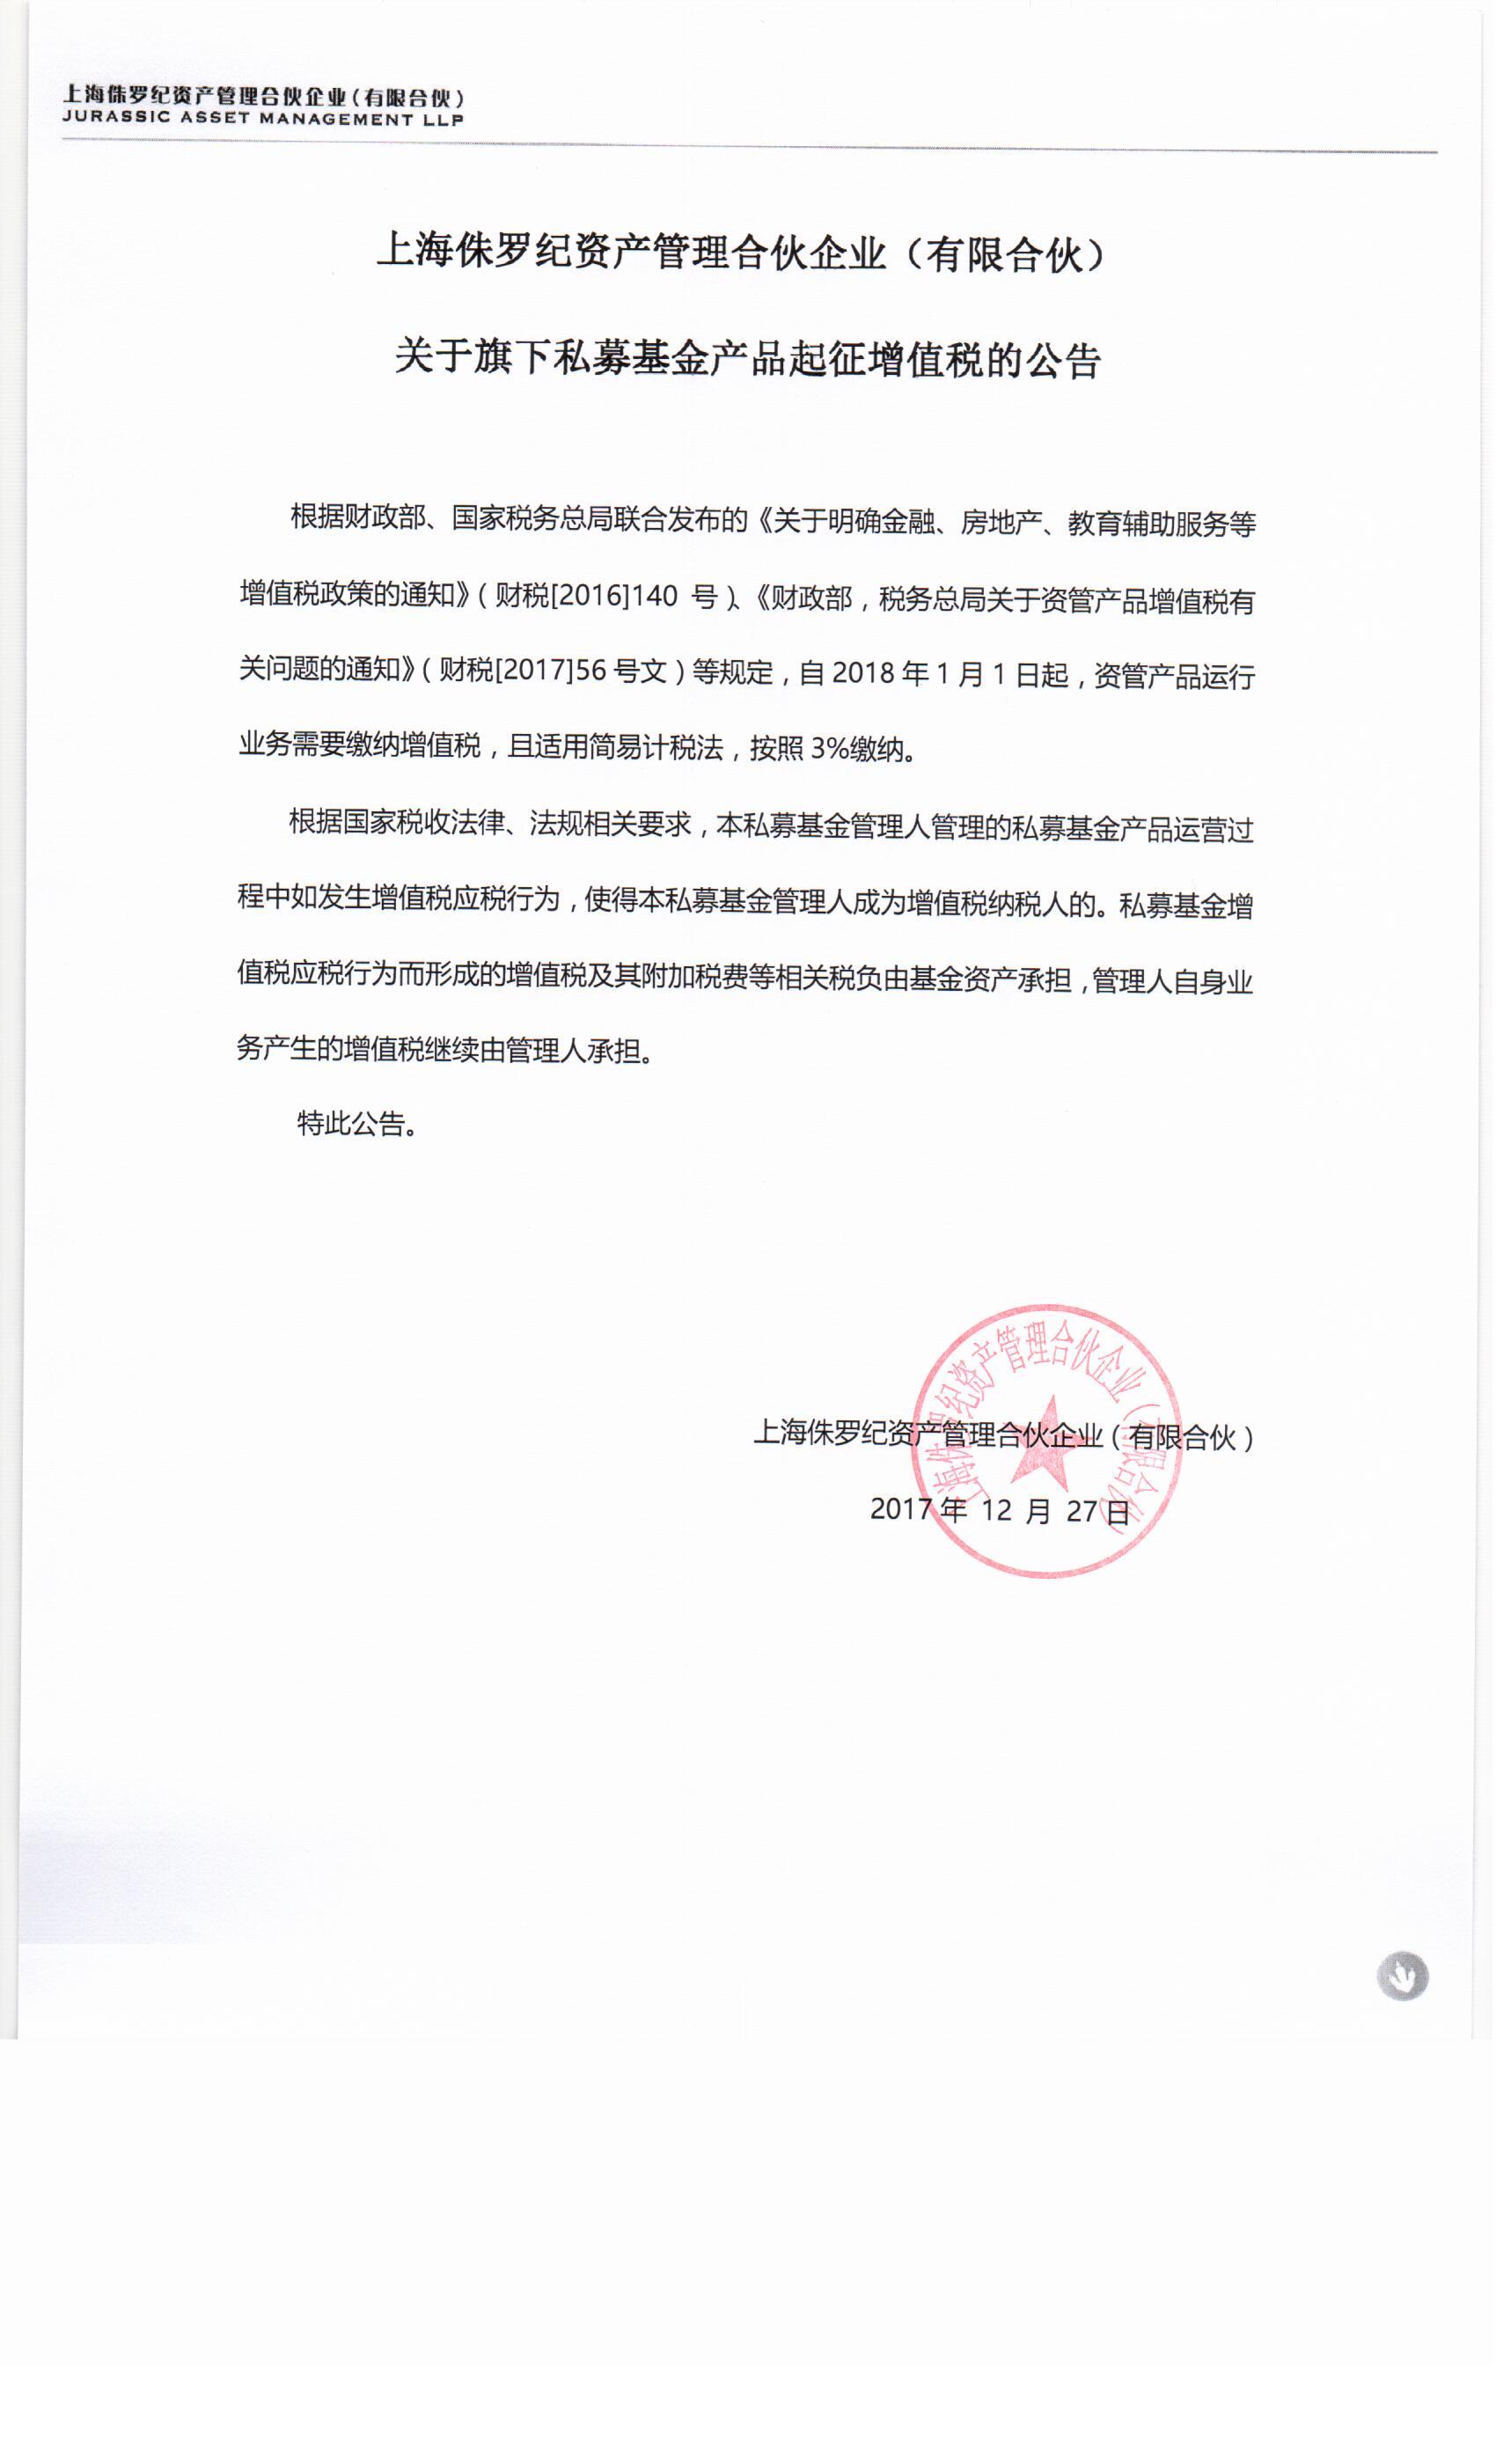 上海侏罗纪资产管理合伙企业（有限合伙）关于旗下私募基金产品起征增值税的公告.jpg